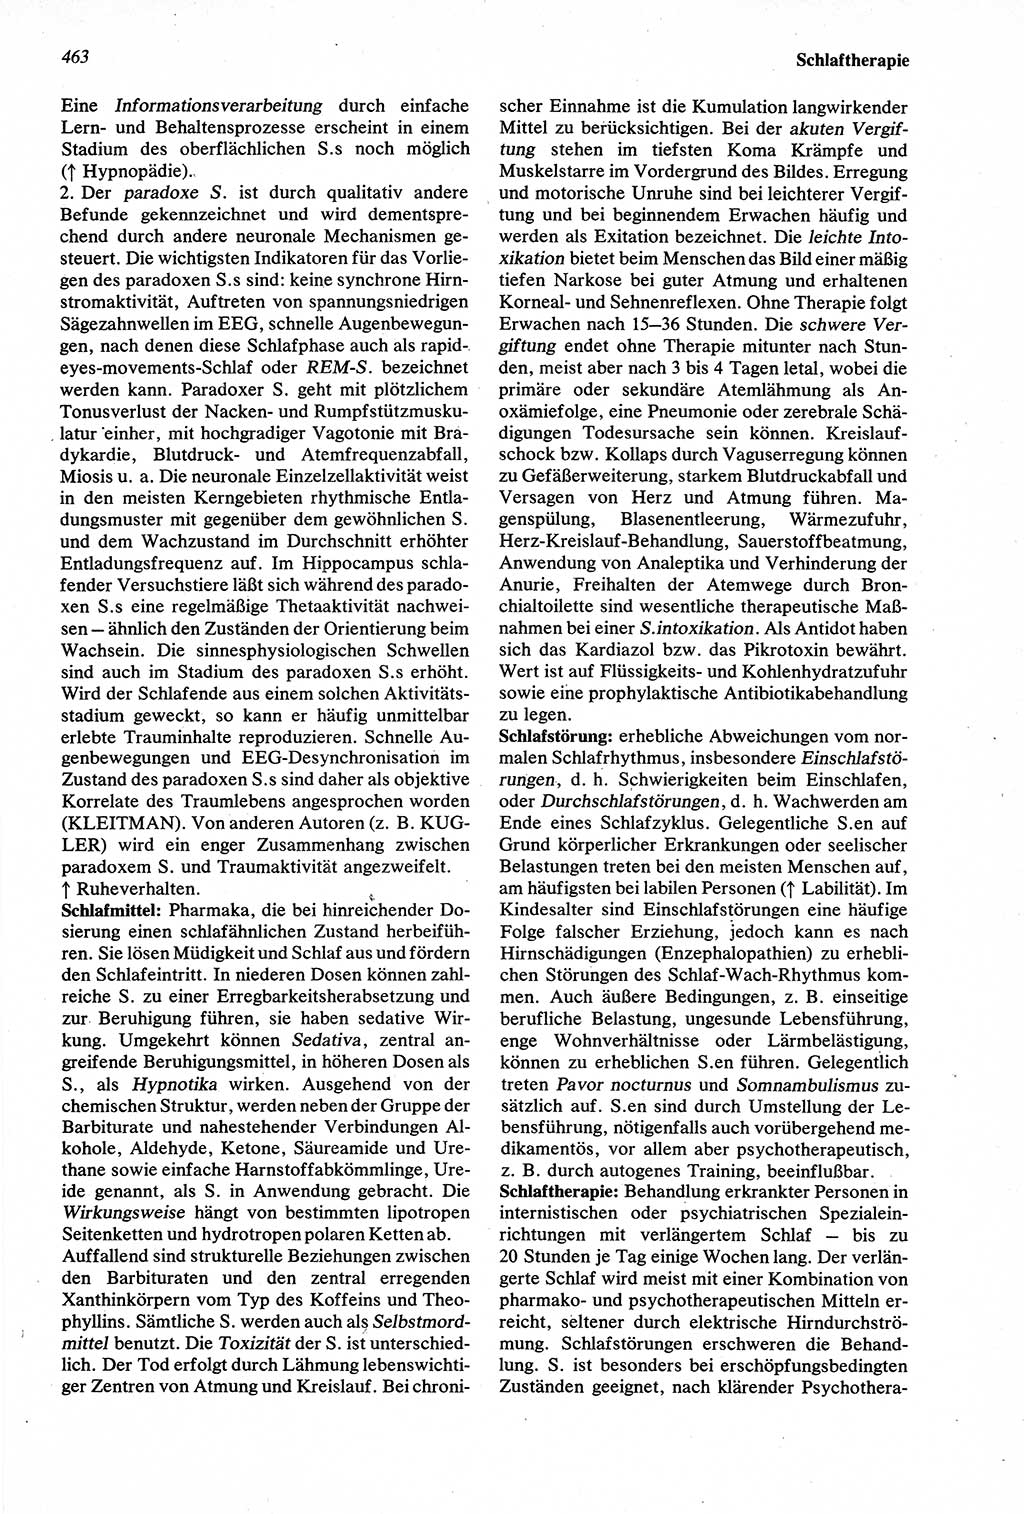 Wörterbuch der Psychologie [Deutsche Demokratische Republik (DDR)] 1976, Seite 463 (Wb. Psych. DDR 1976, S. 463)